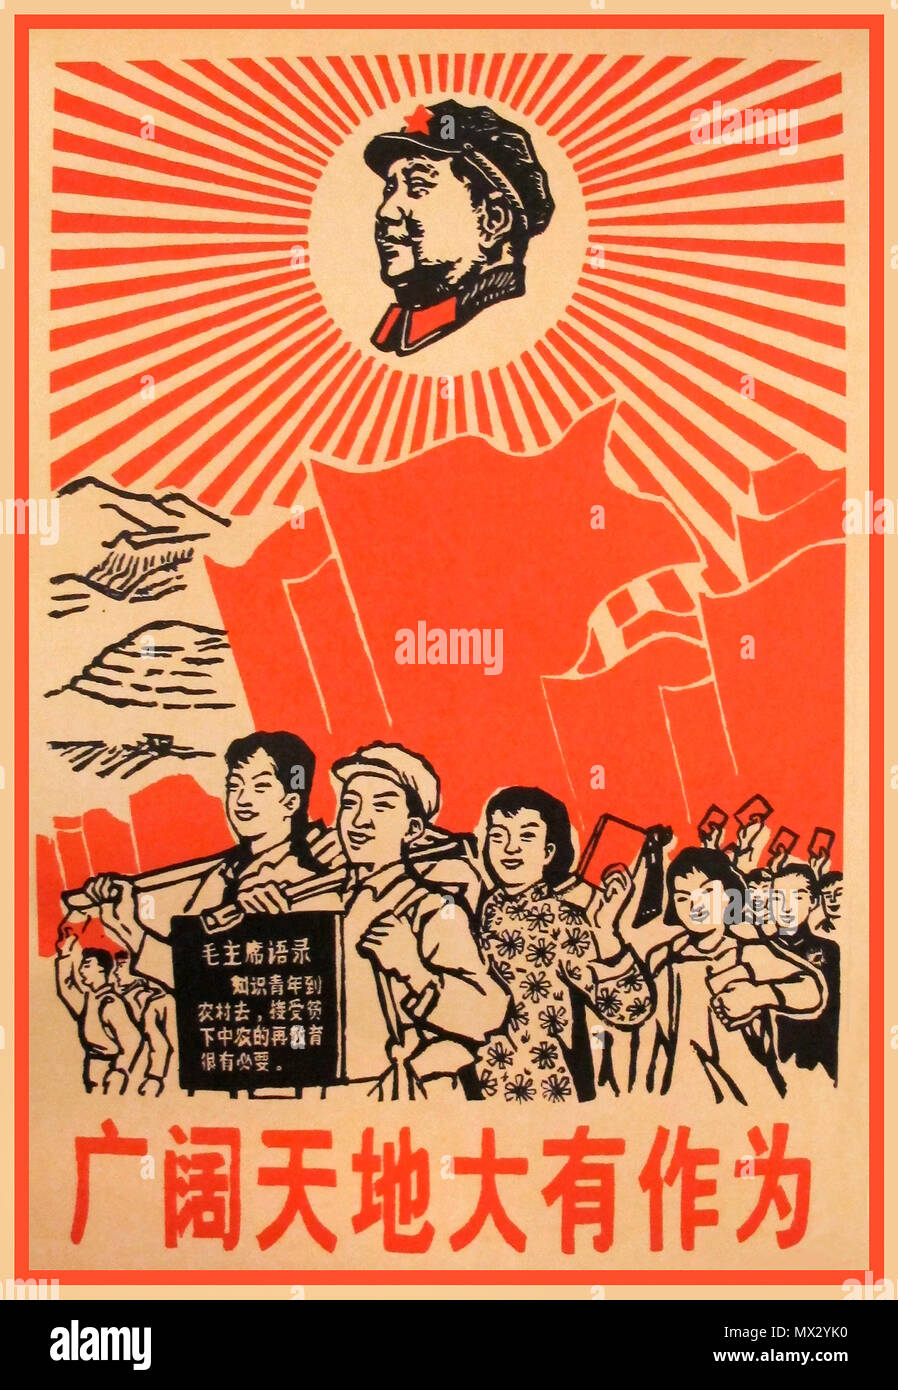 1967 Vintage chinesisches Propagandaplakat, mit dem Vorsitzenden Mao Zedong als leuchtender Sonne. Die Propagandabotschaft lautet „Weite Welt der Errungenschaften“, „Communist Vintage Propaganda Poster“ Stockfoto